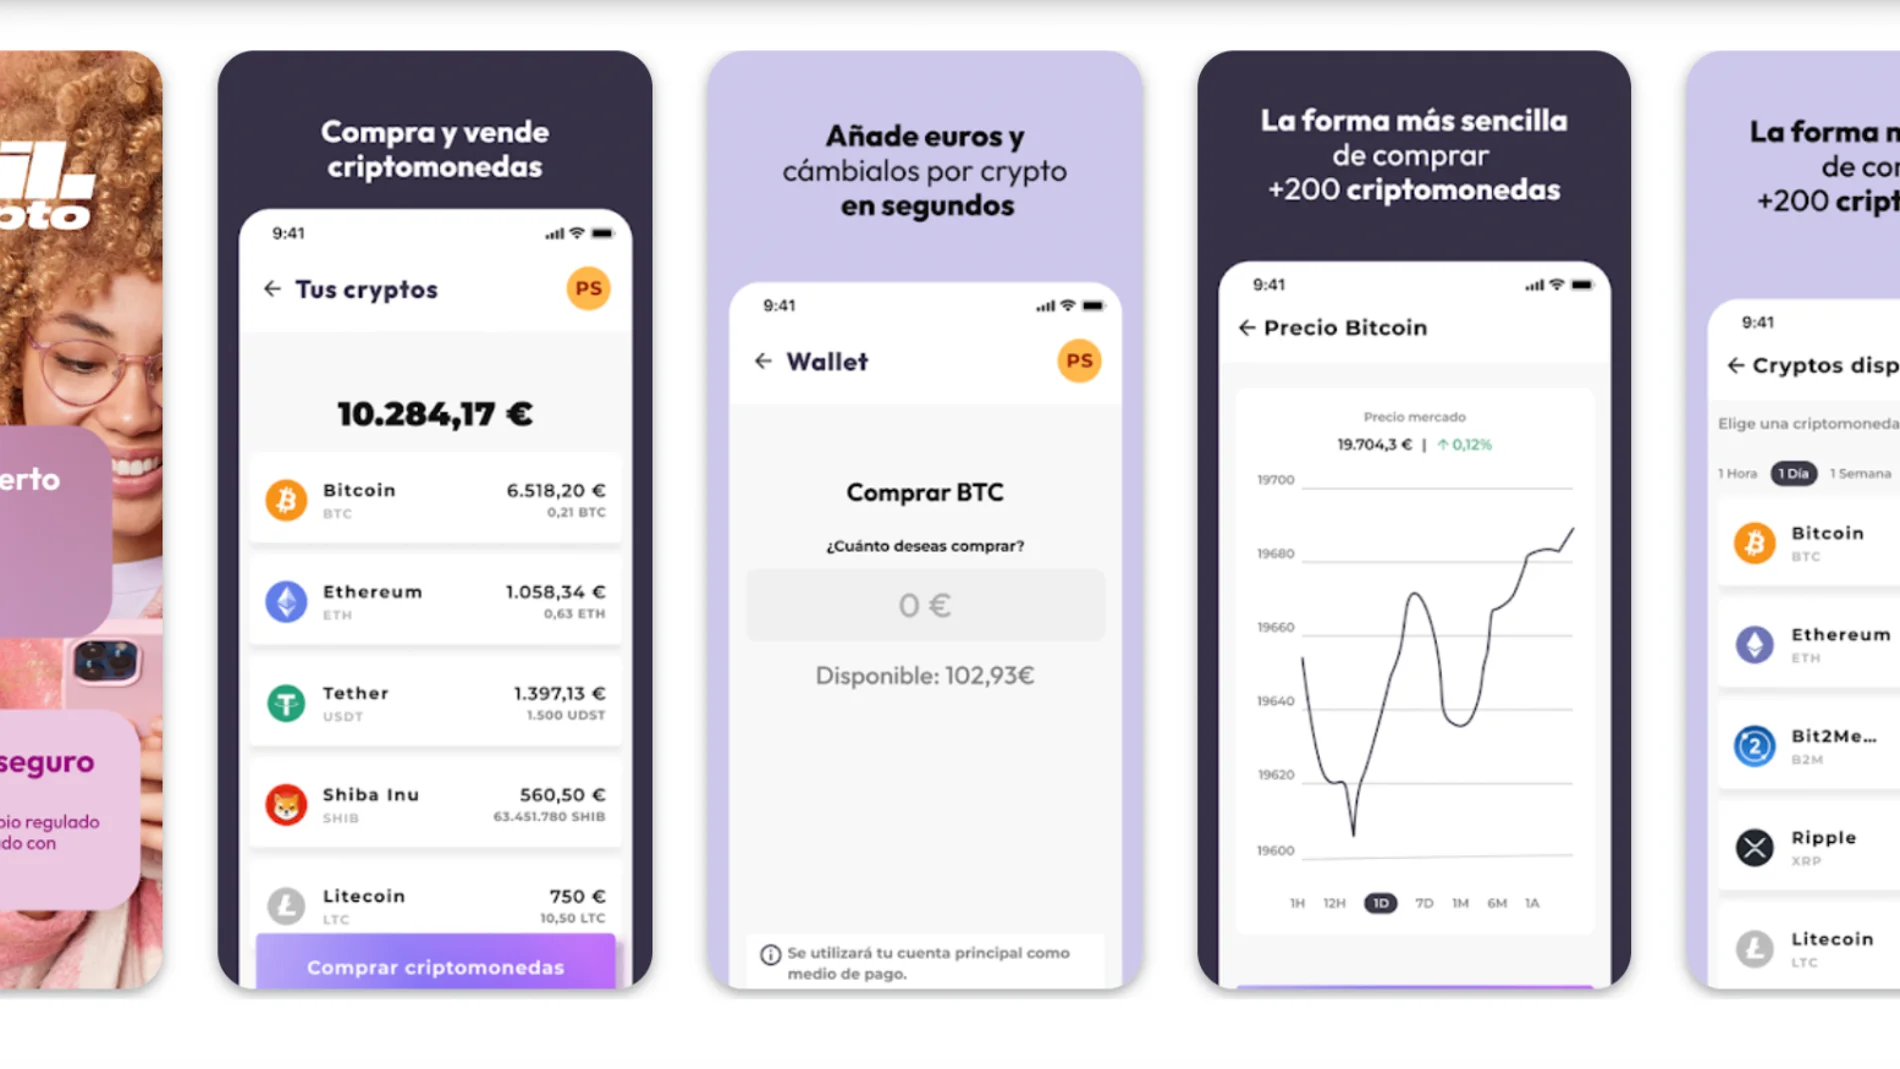 Las 5 mejores aplicaciones para comprar bitcoin y criptomonedas en España.